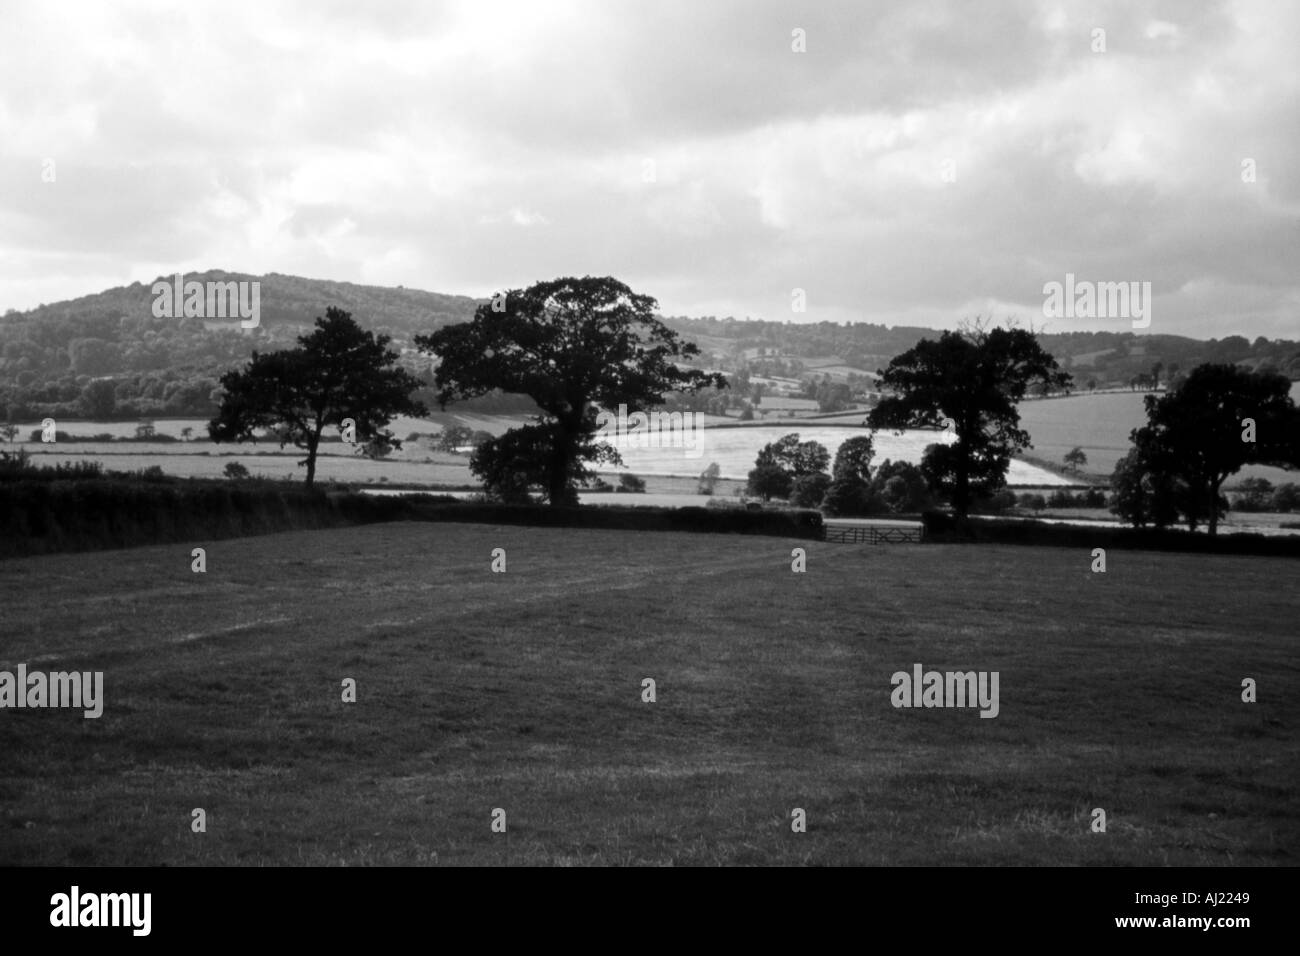 Immagine in bianco e nero fuori un immagine fuori un campo nel lato del paese Foto Stock